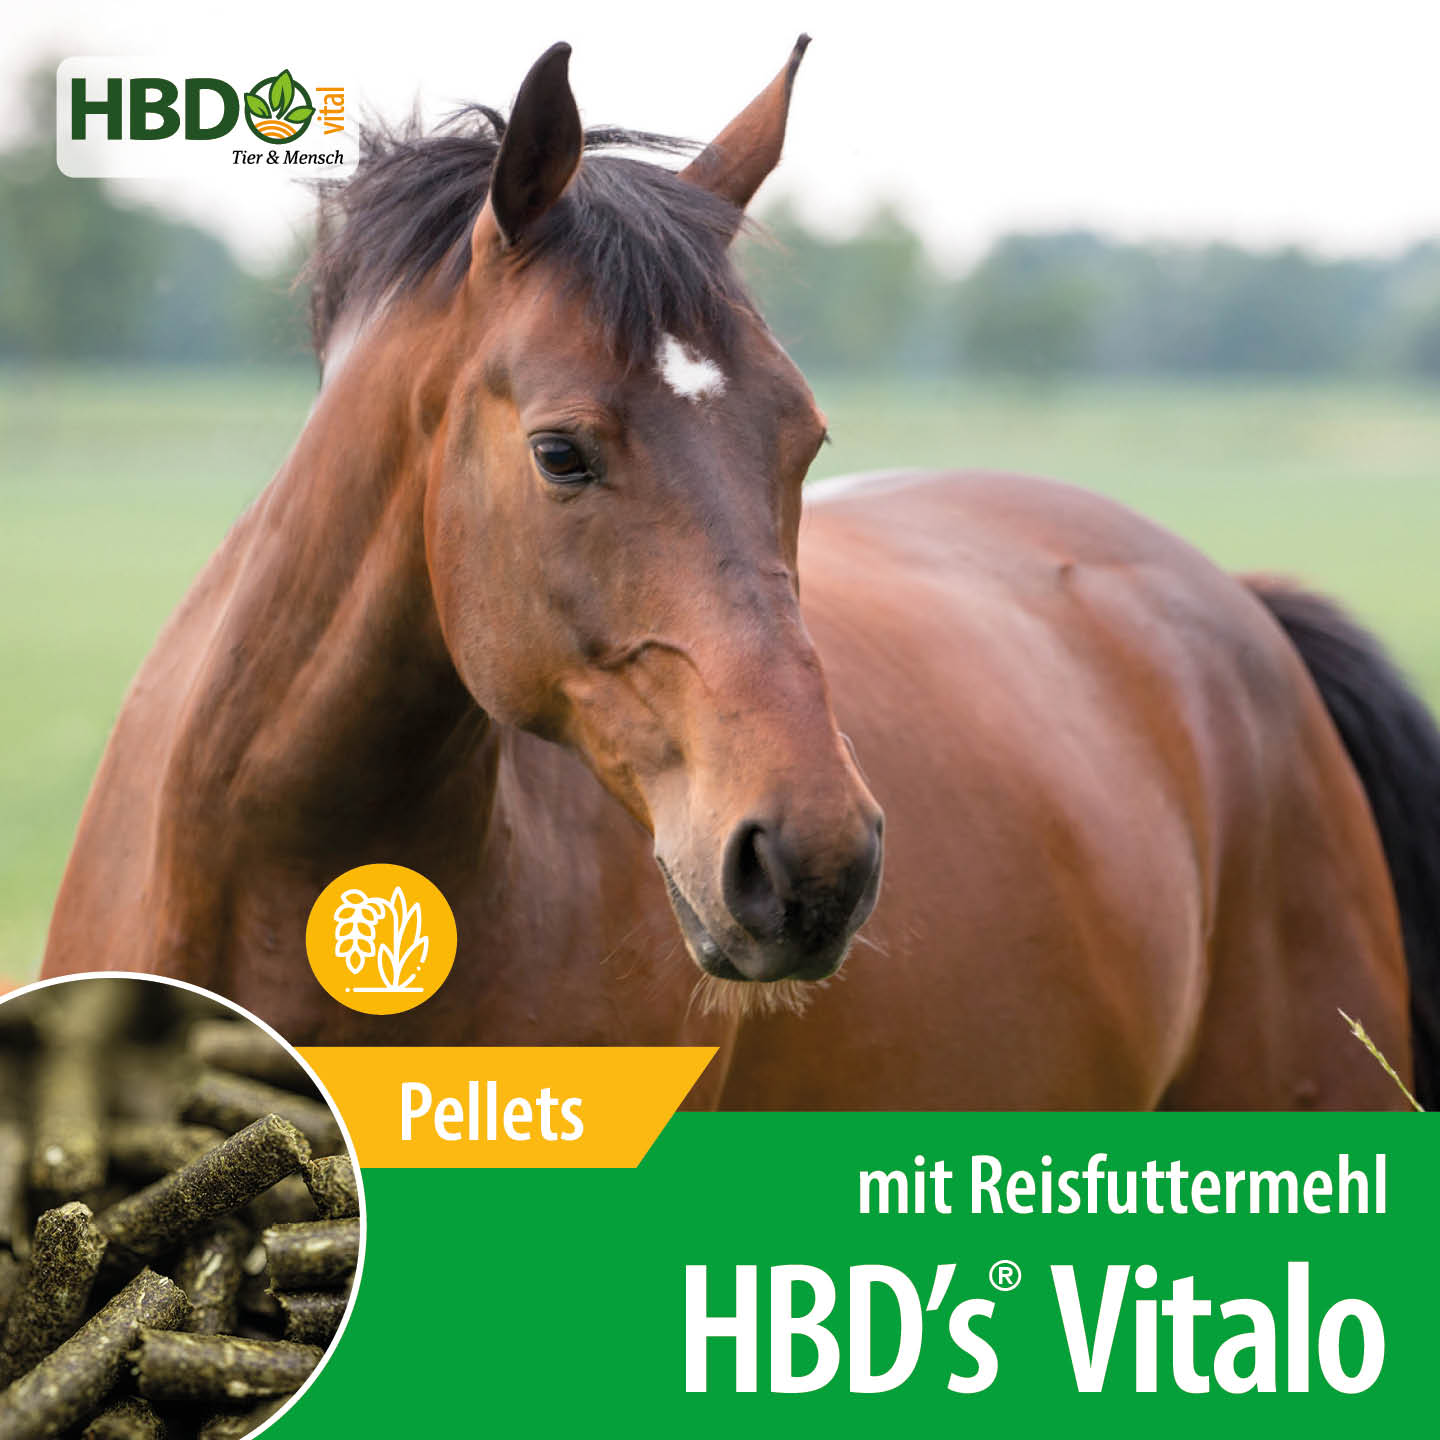 Shopbild für HBD’s Vitalo mit Reisfuttermehl - Das Bild zeigt den Produktnamen sowie den Hinweis, dass es sich um Pellets handelt. Ein braunes Pferd ist zu sehen.